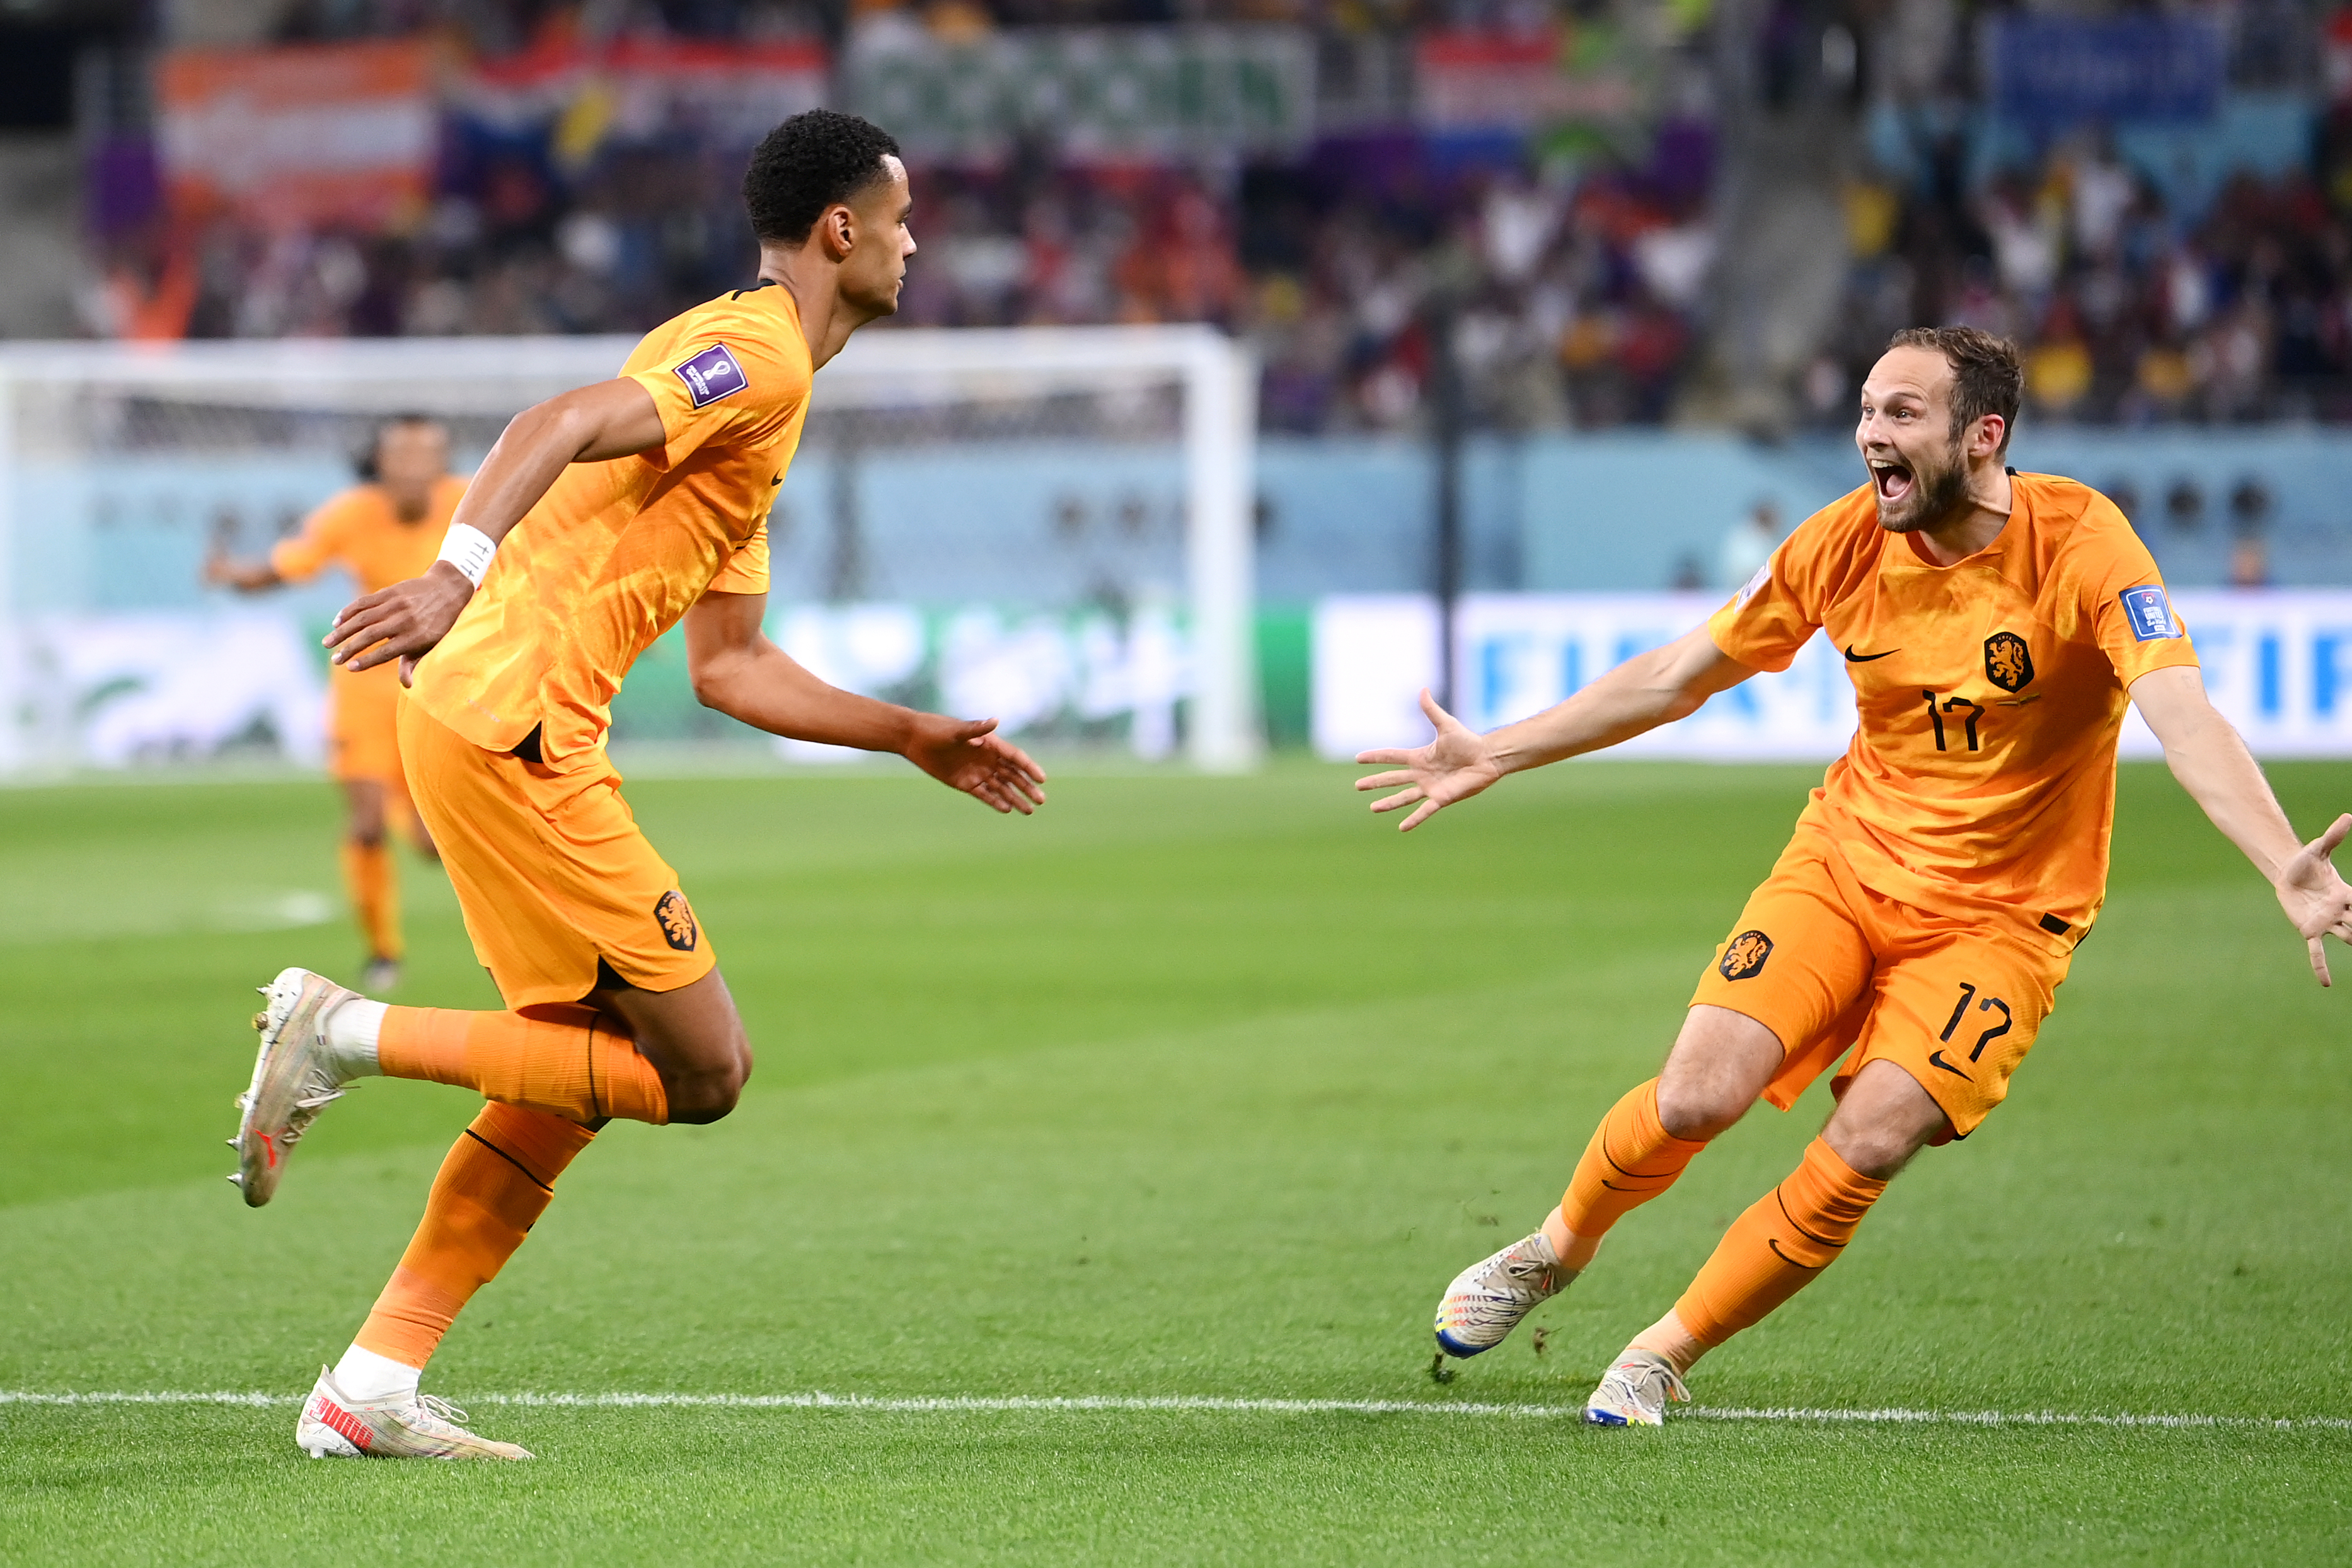 Olanda - Ecuador 1-0, în a doua etapă din faza grupelor. ”Portocala mecanică” marchează în minutul 6. Gol anulat Estupinan